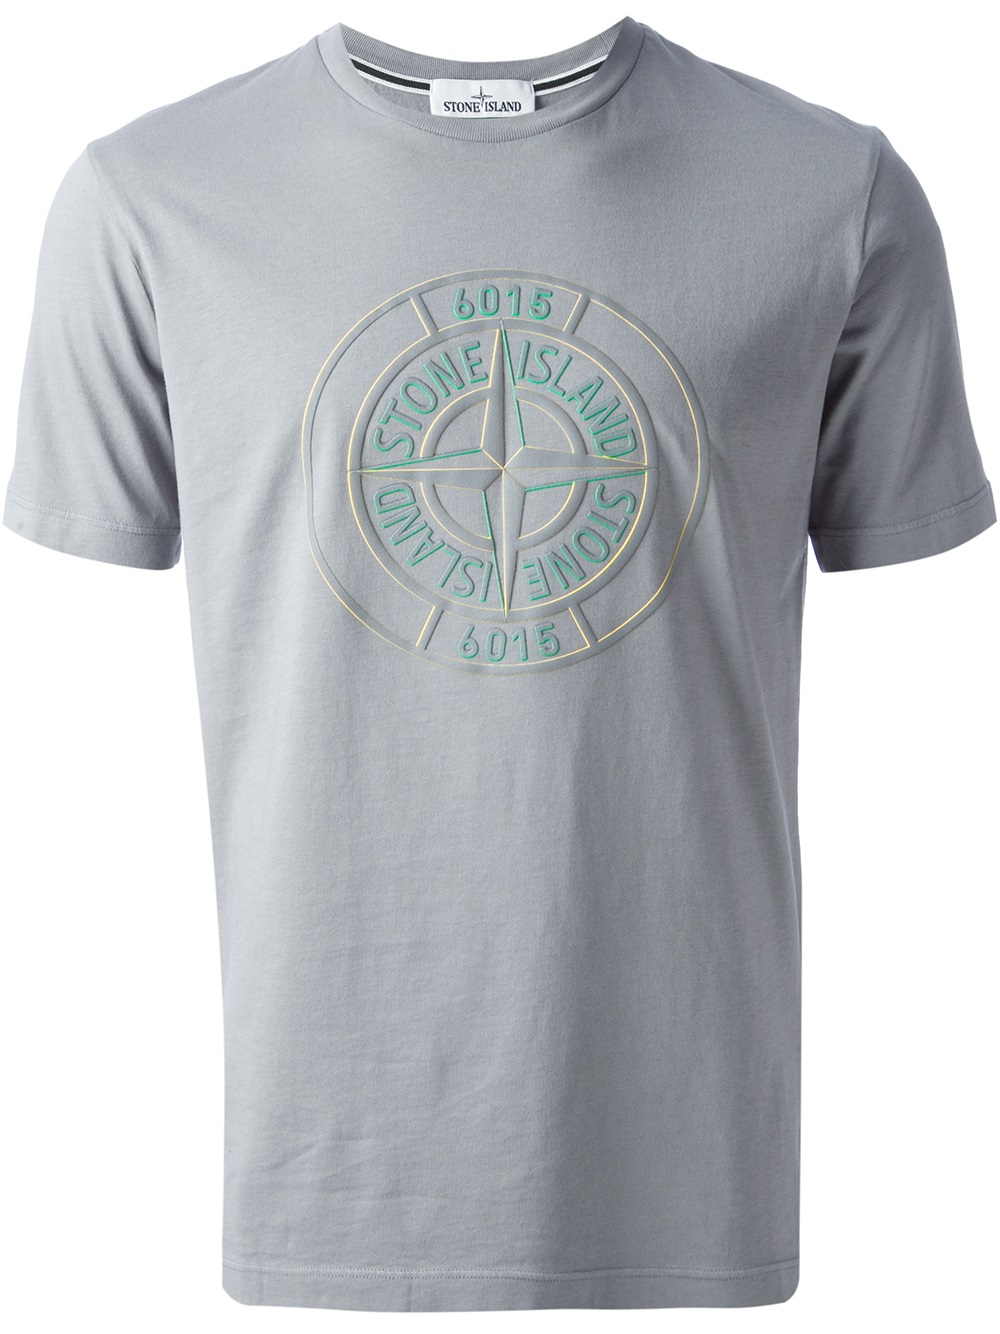 Stone Island Logo Tshirt in Grey (Gray) for Men - Lyst